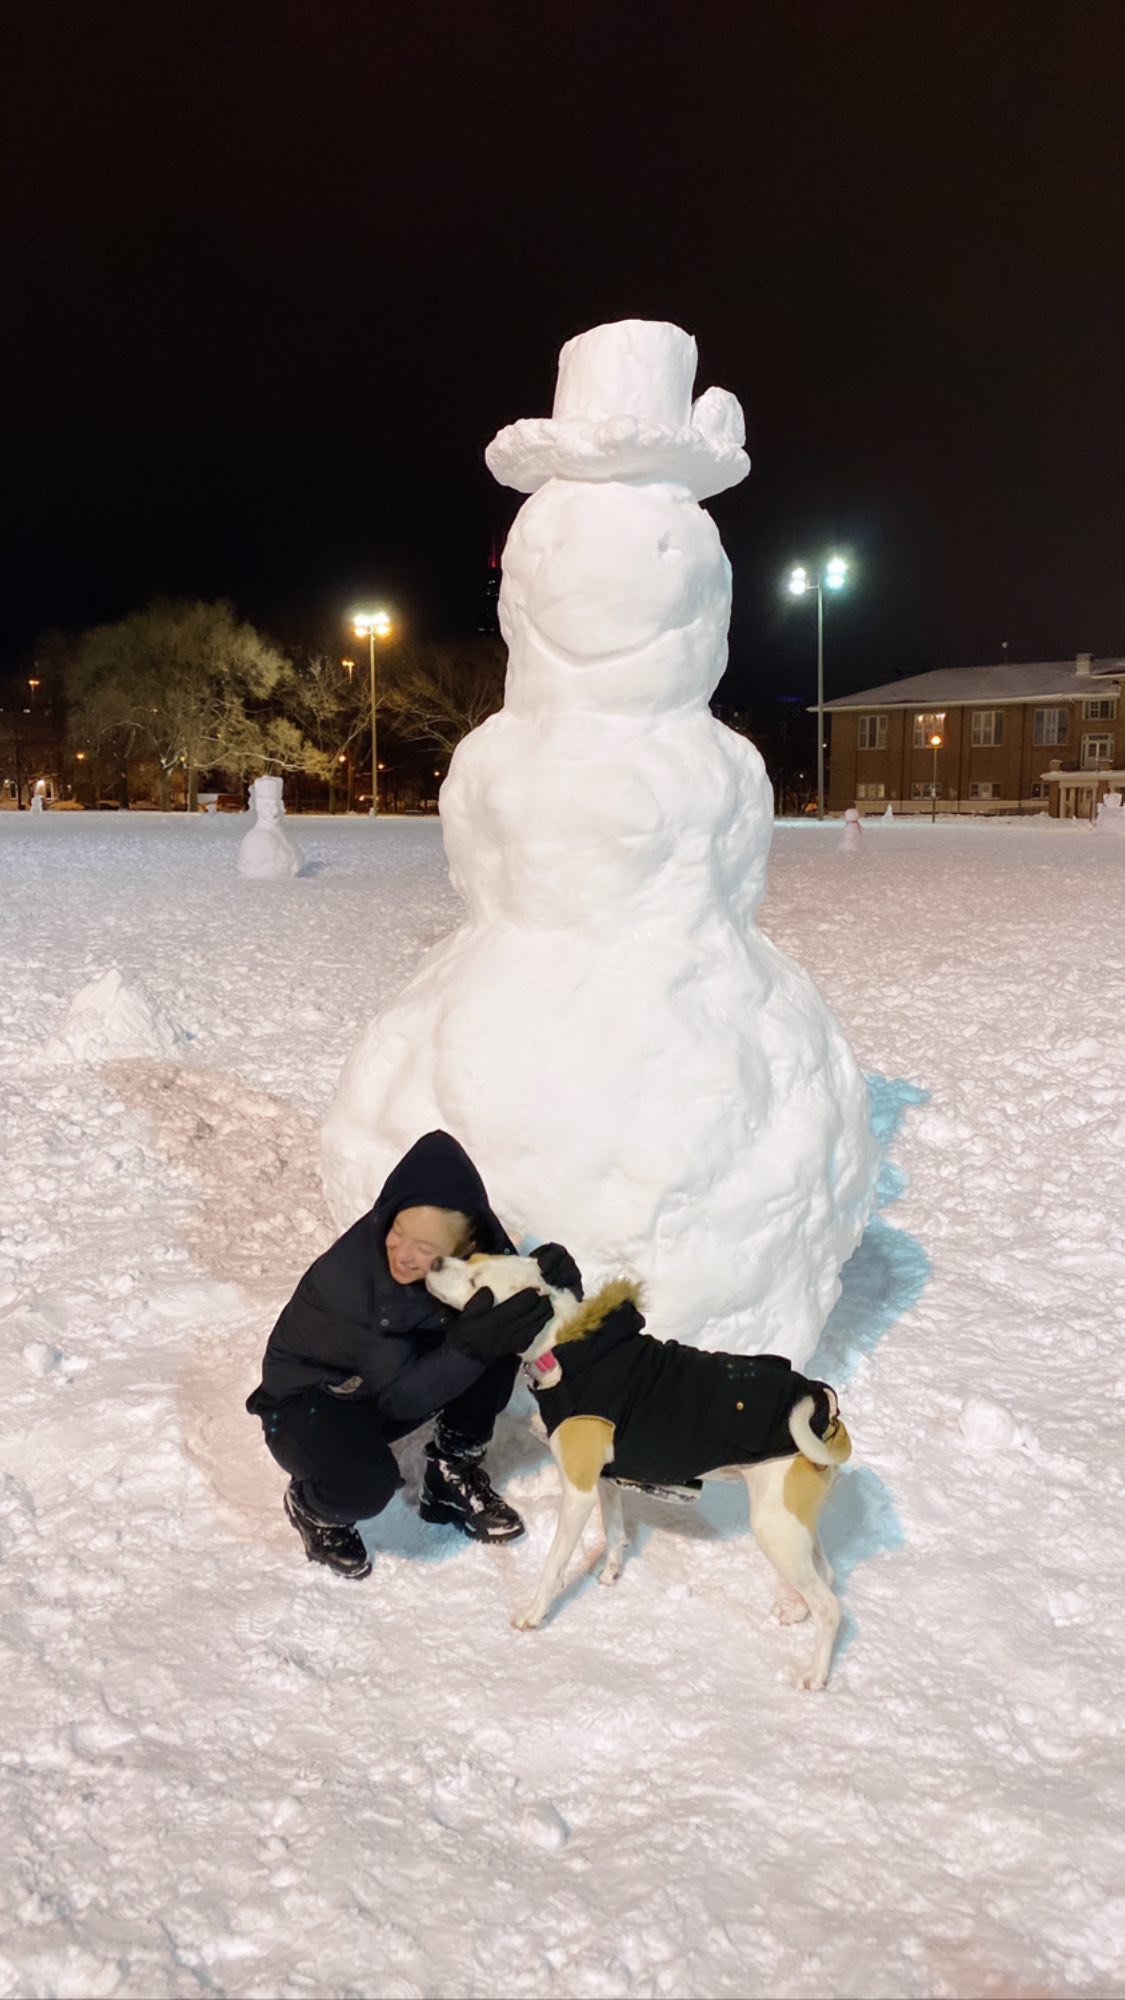 Fotos n°1 : Sydney Sweeney Construye un ejrcito de muecos de nieve!